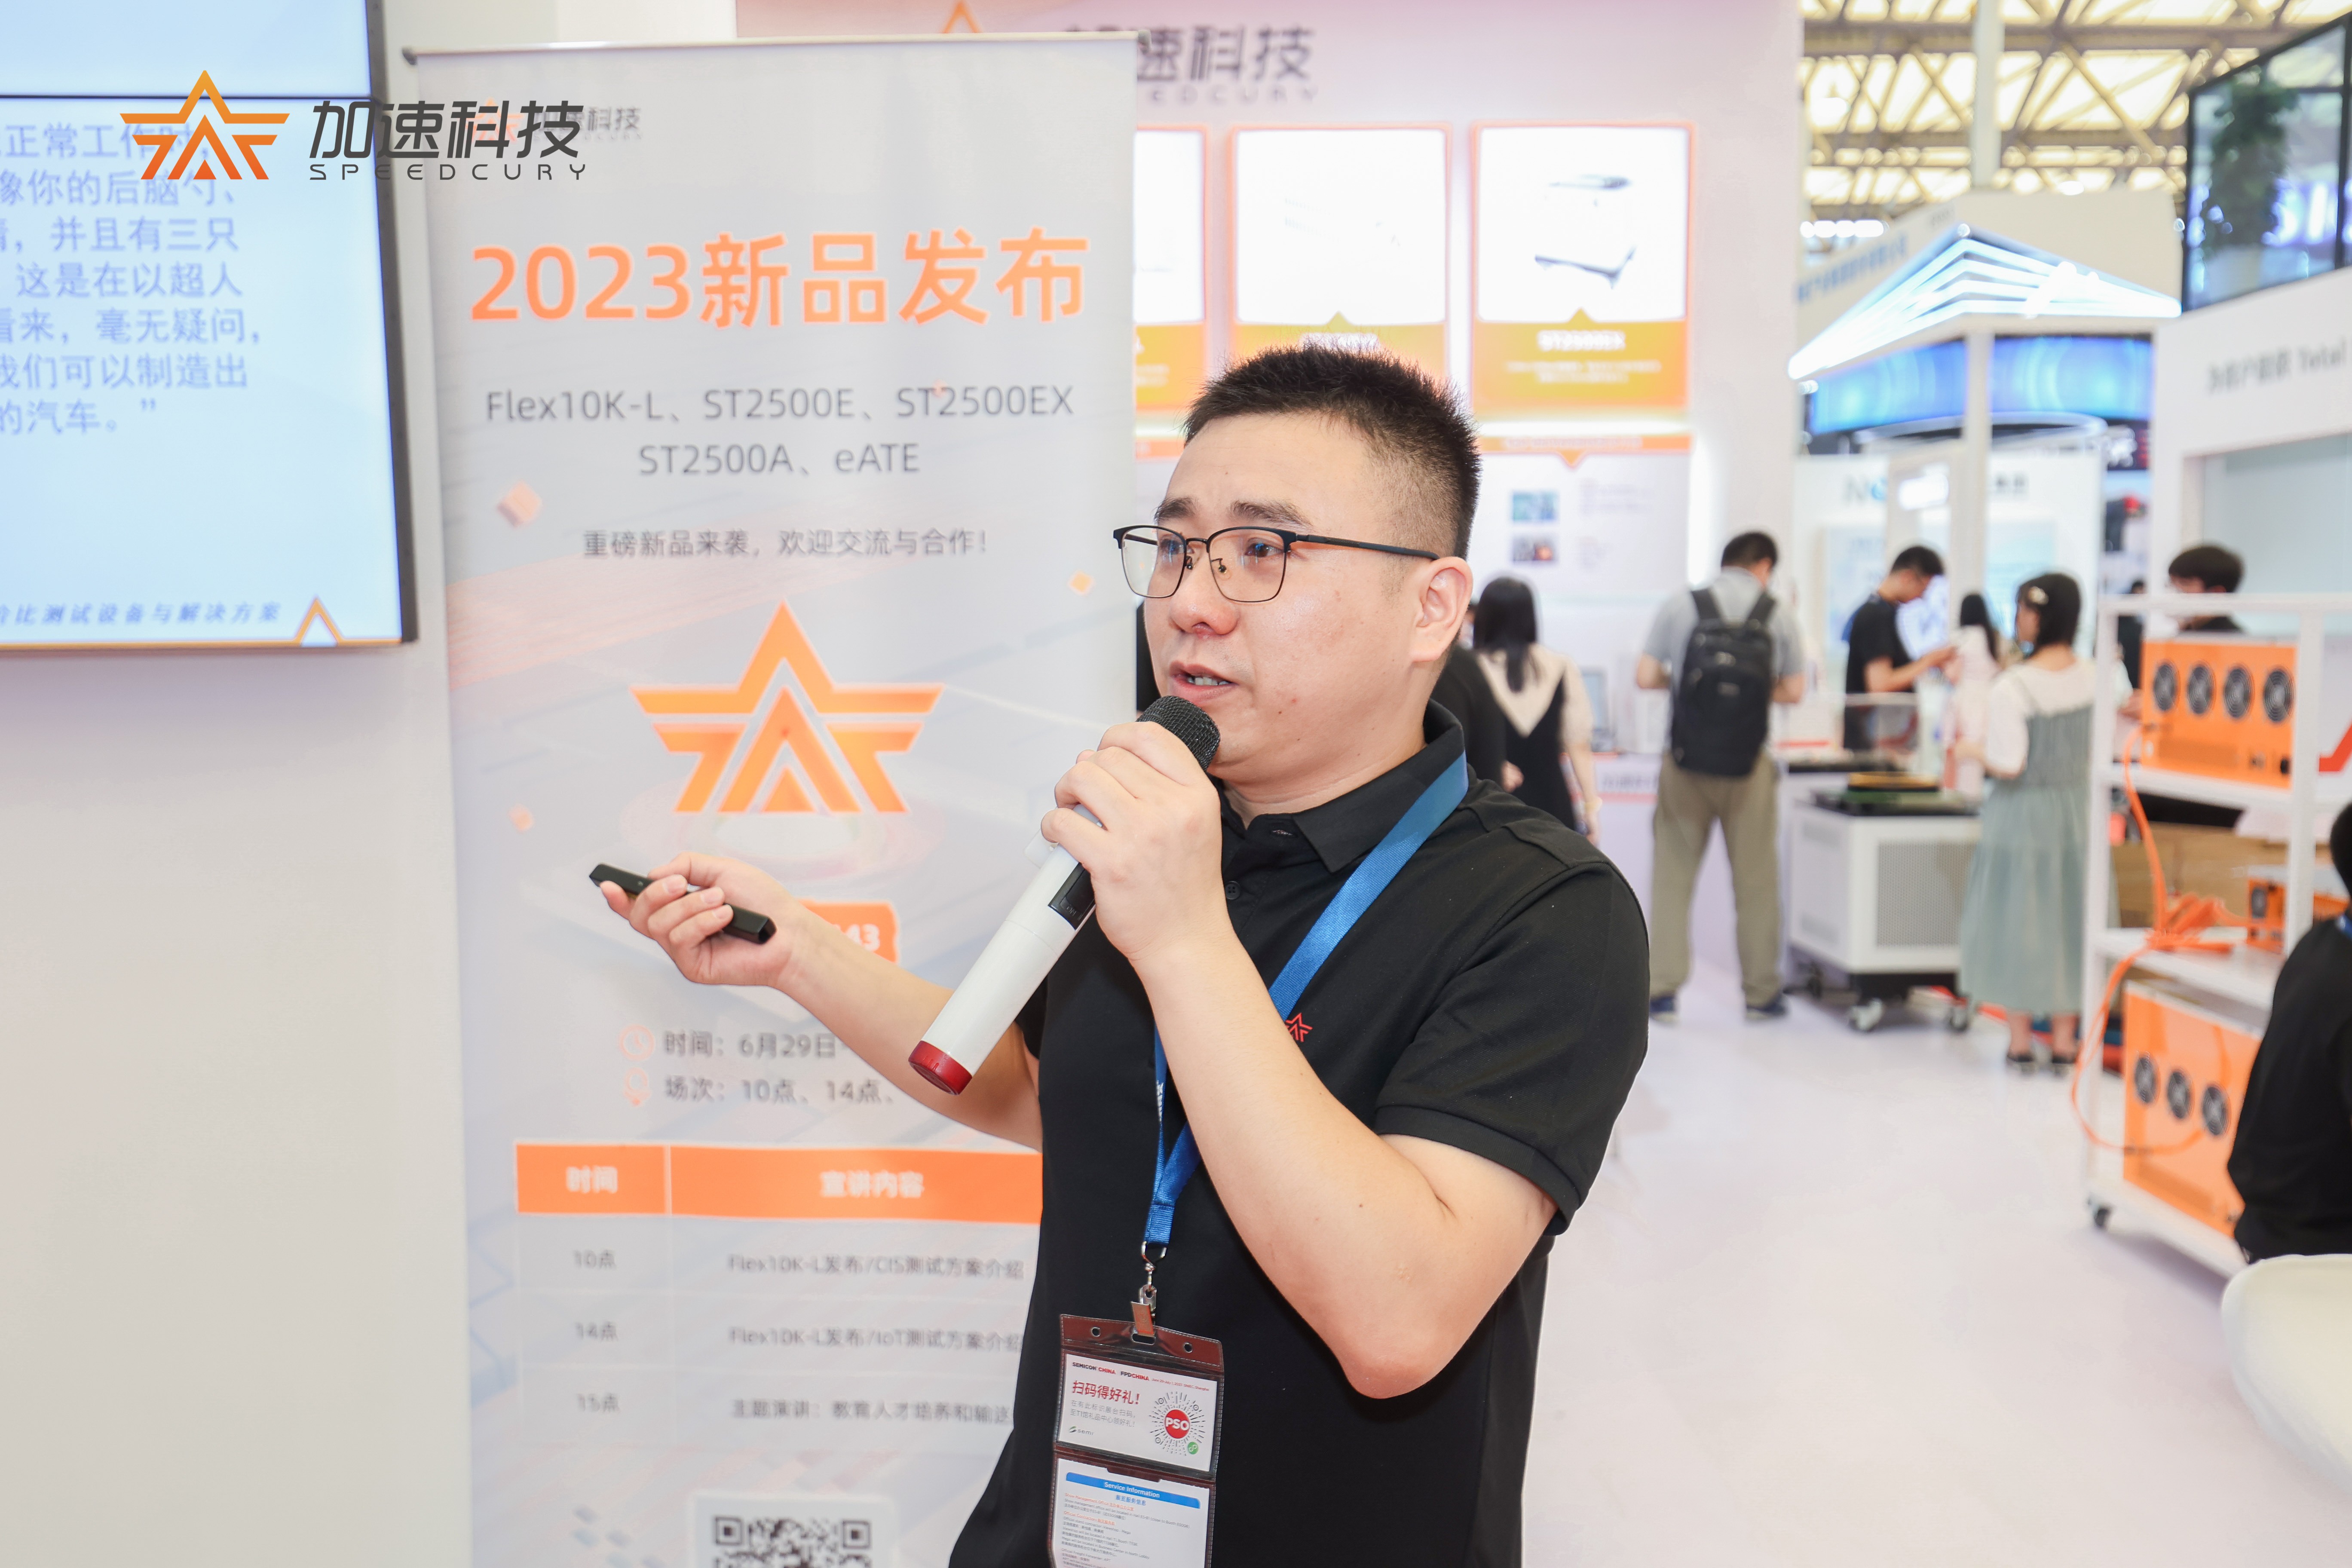 新品首秀 热度爆表！加速科技精彩亮相SEMICON China 2023